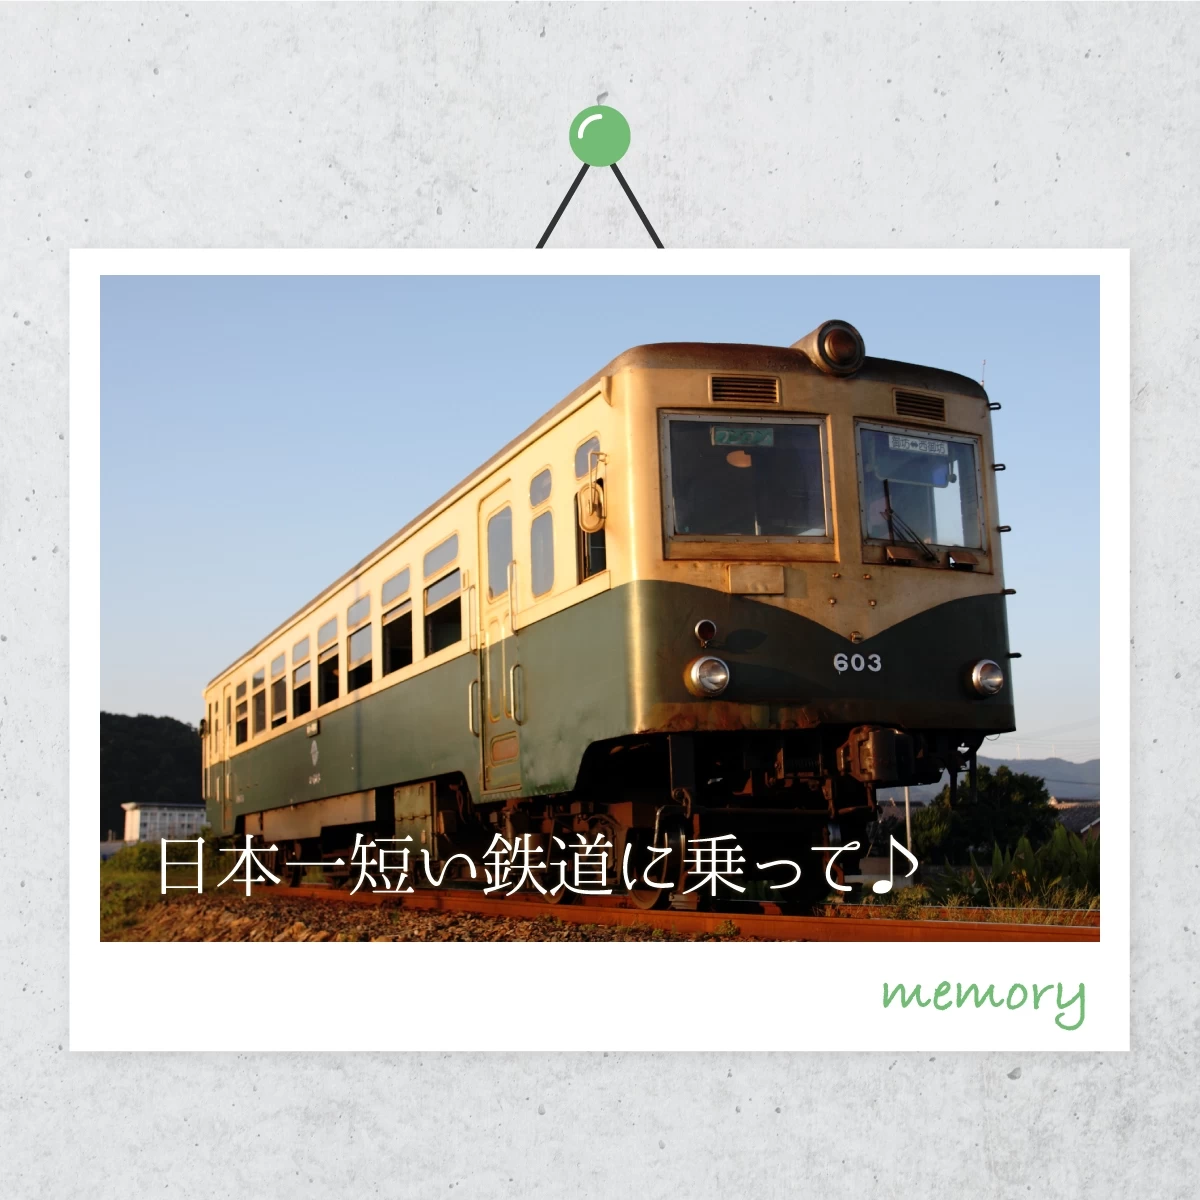 和歌山の御坊市寺内町をのんびり散策。紀州鉄道に乗ってひとり旅